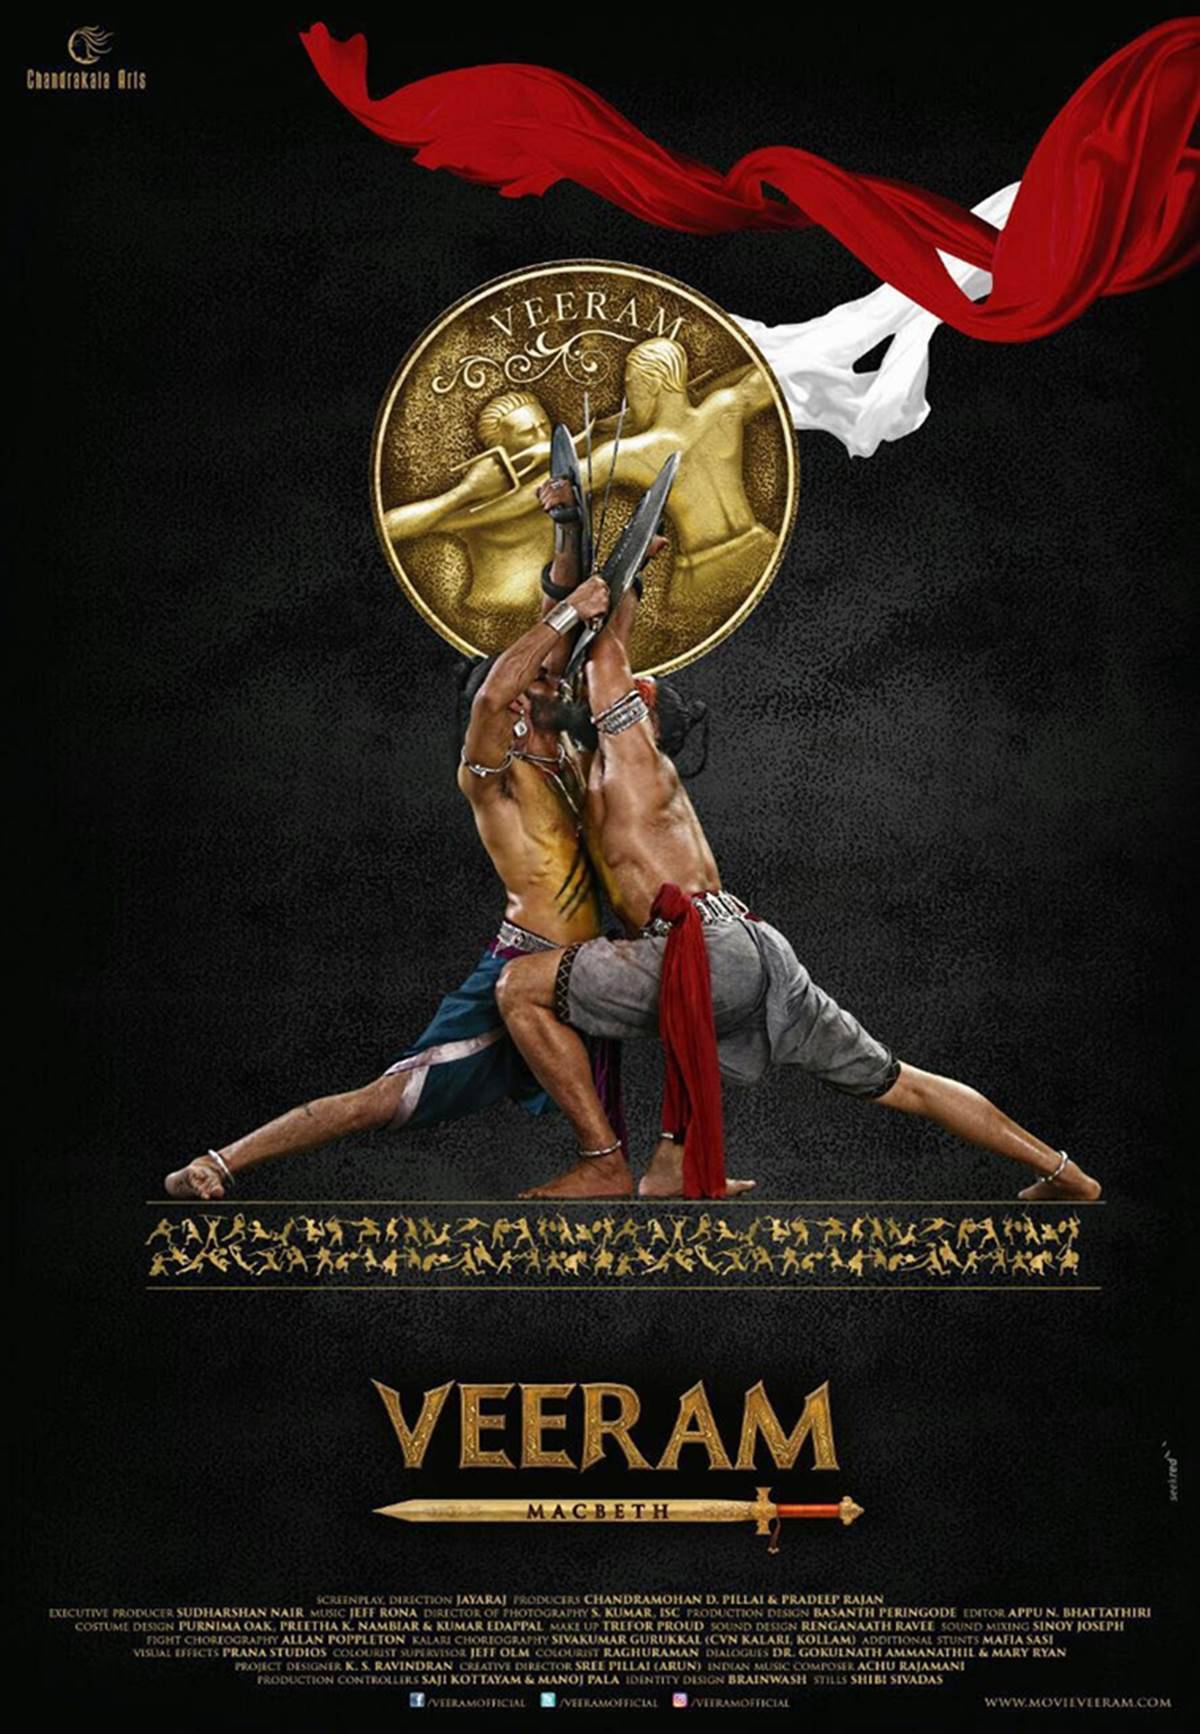 Veeram poster: Kunal Kapoor fights a duel, aces at Kalaripayattu. Entertainment News, The Indian Express